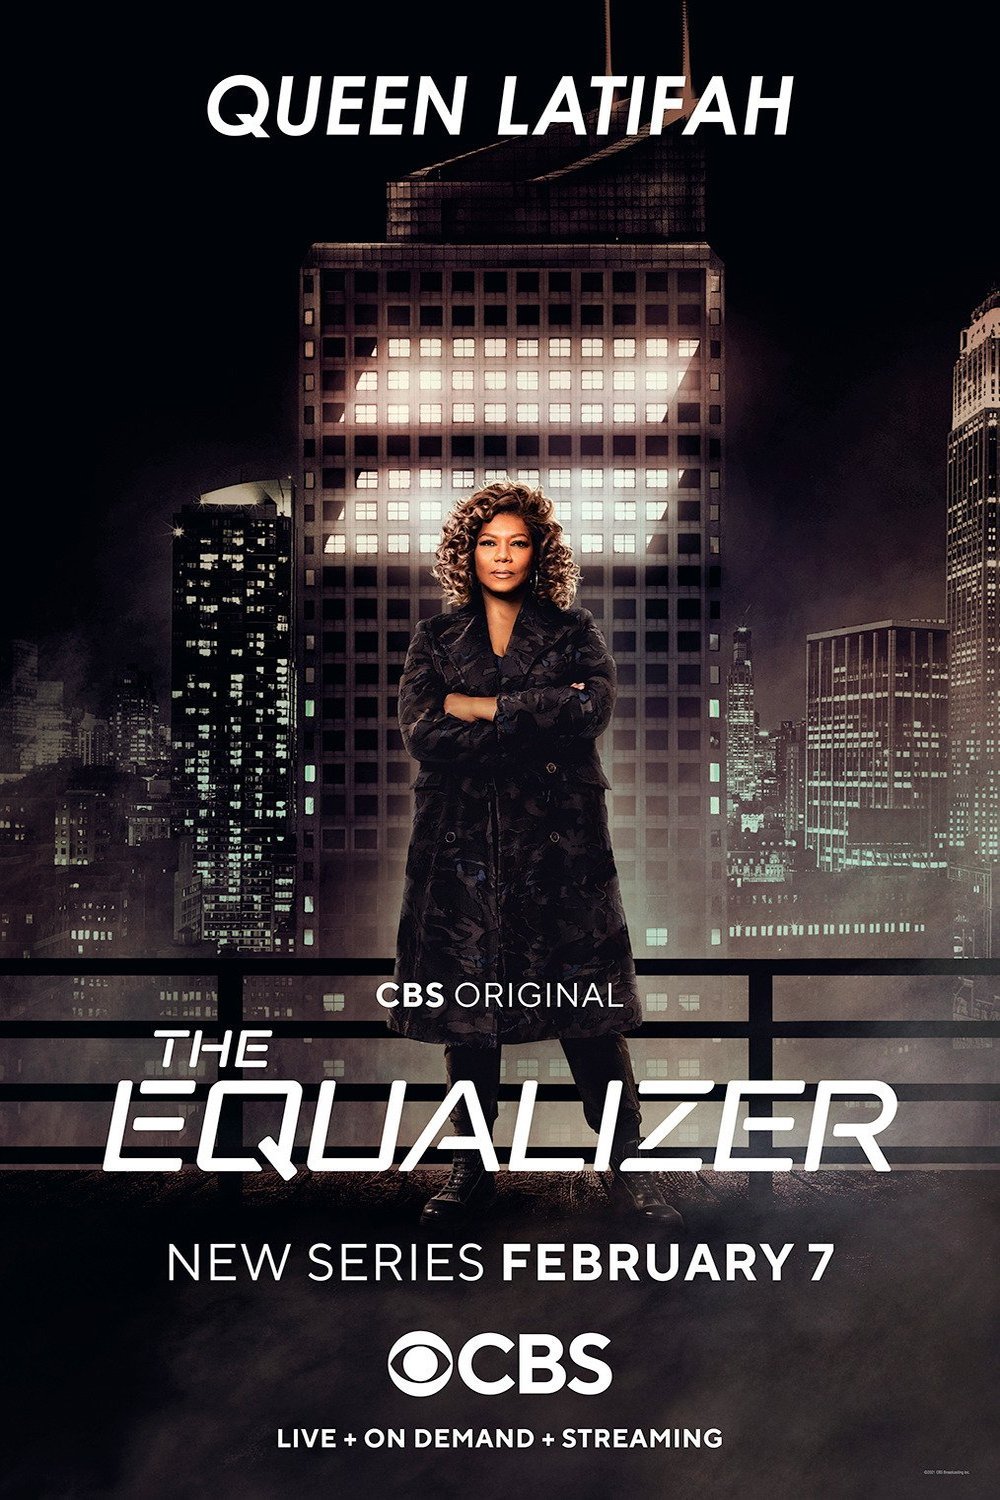 L'affiche du film The Equalizer